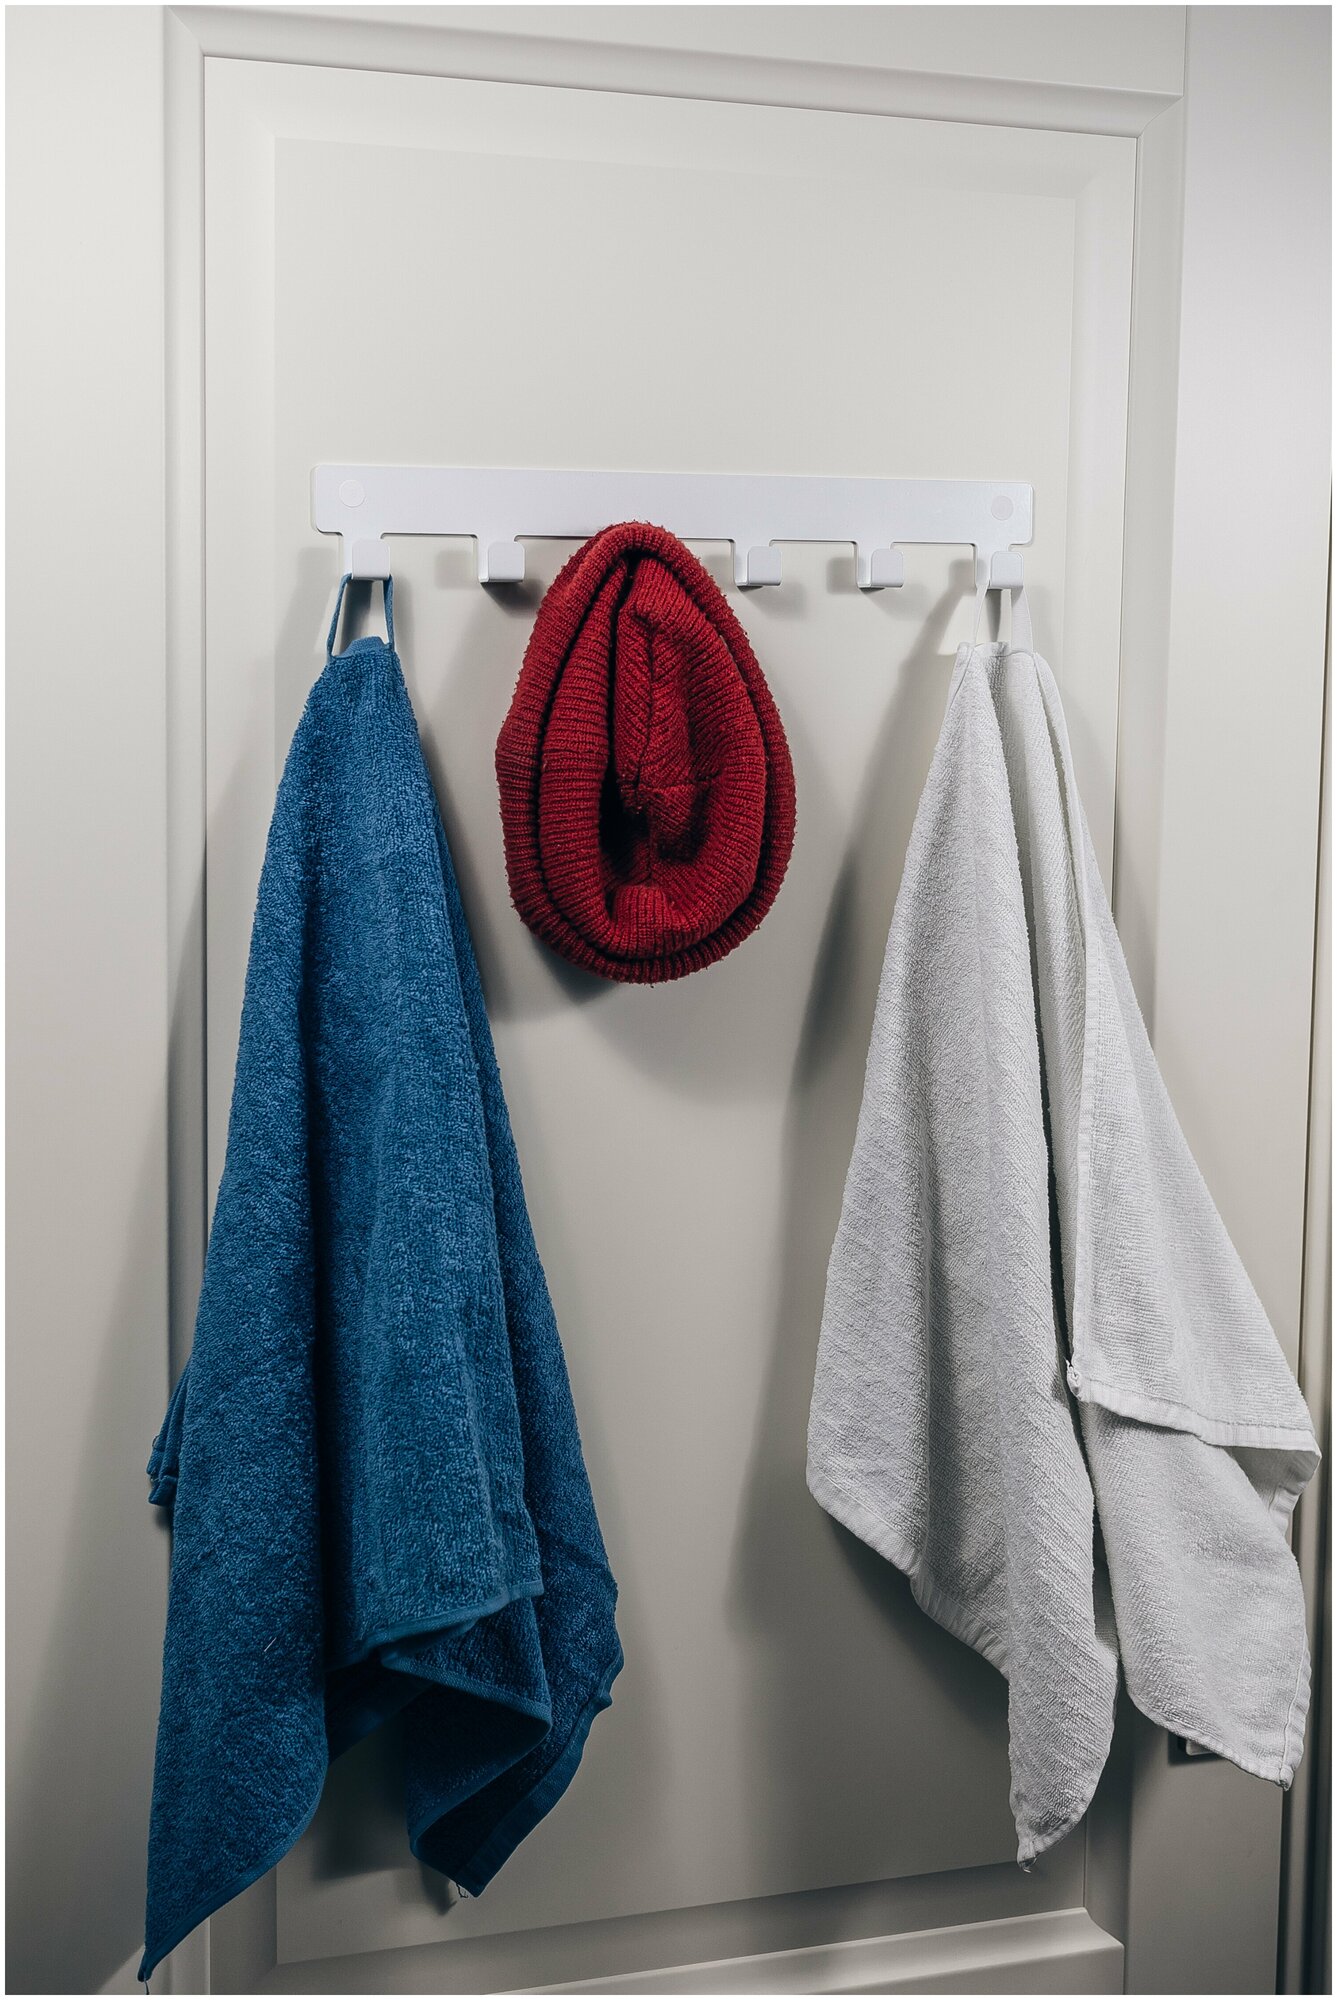 Вешалка ключница 6 крючков настенная для полотенец одежды вещей в ванную кухню прихожую. В дом квартиру дачу.